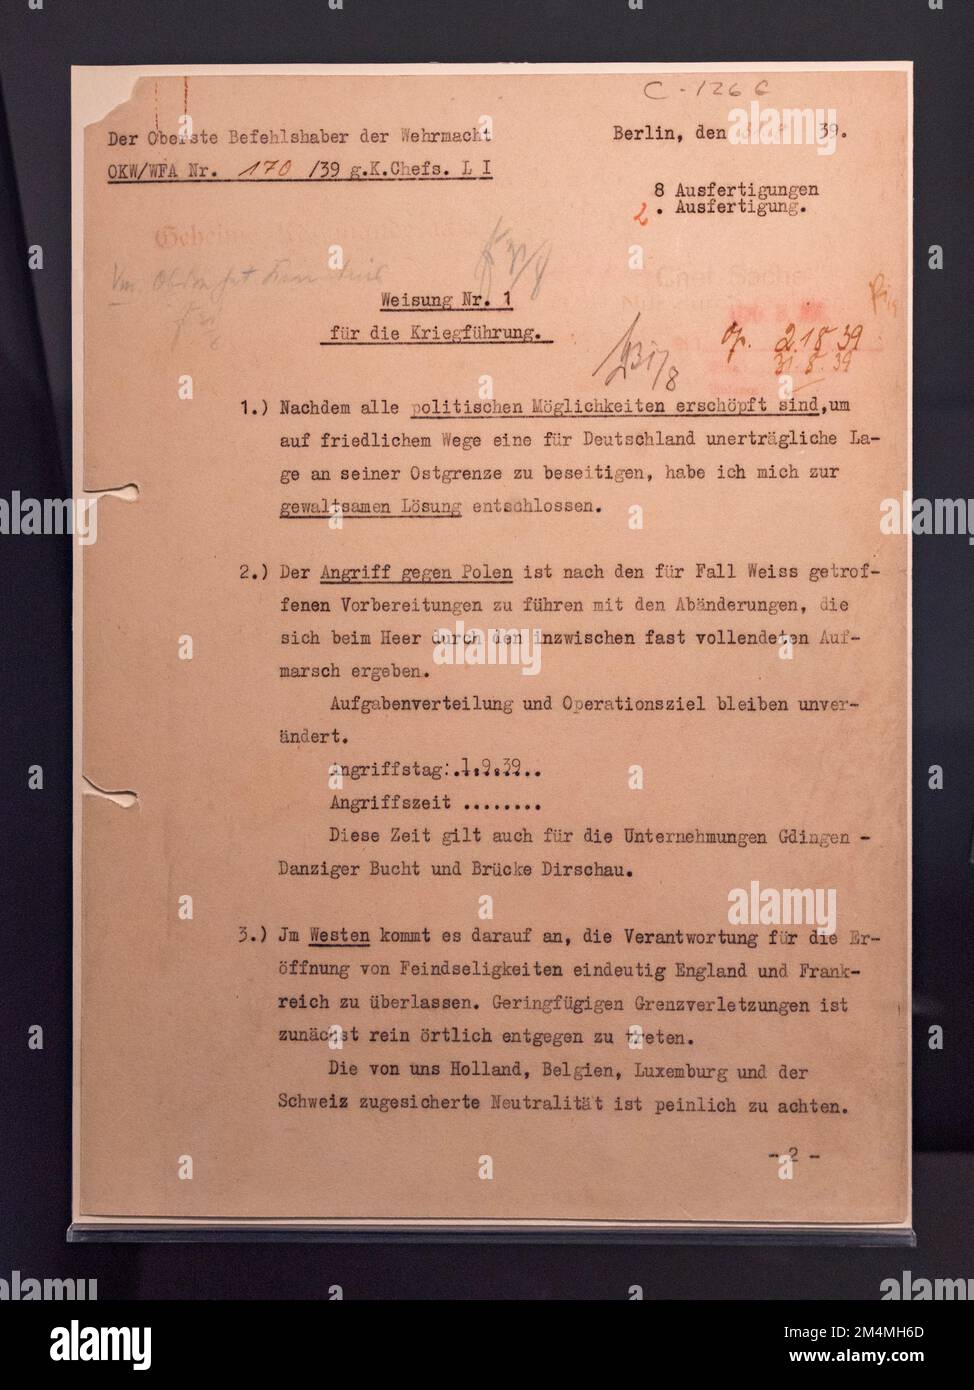 Richtlinie von Adolf Hitler, Anordnung der Invasion von Polen am 1. September 1939, Imperial war Museum, London, Vereinigtes Königreich. Stockfoto